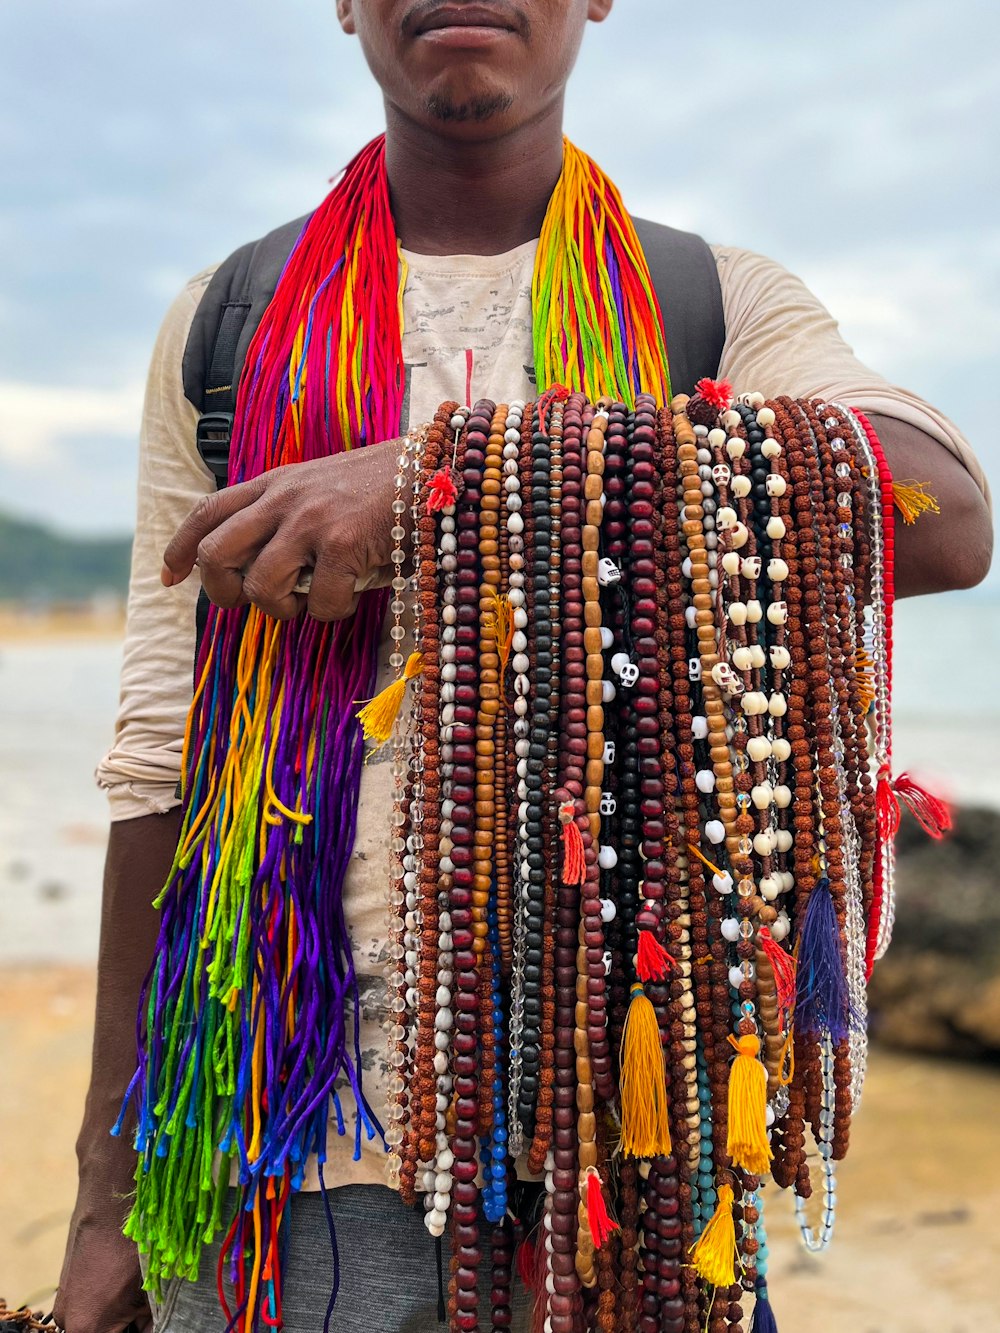 Ein Mann hält einen Strauß bunter Perlen